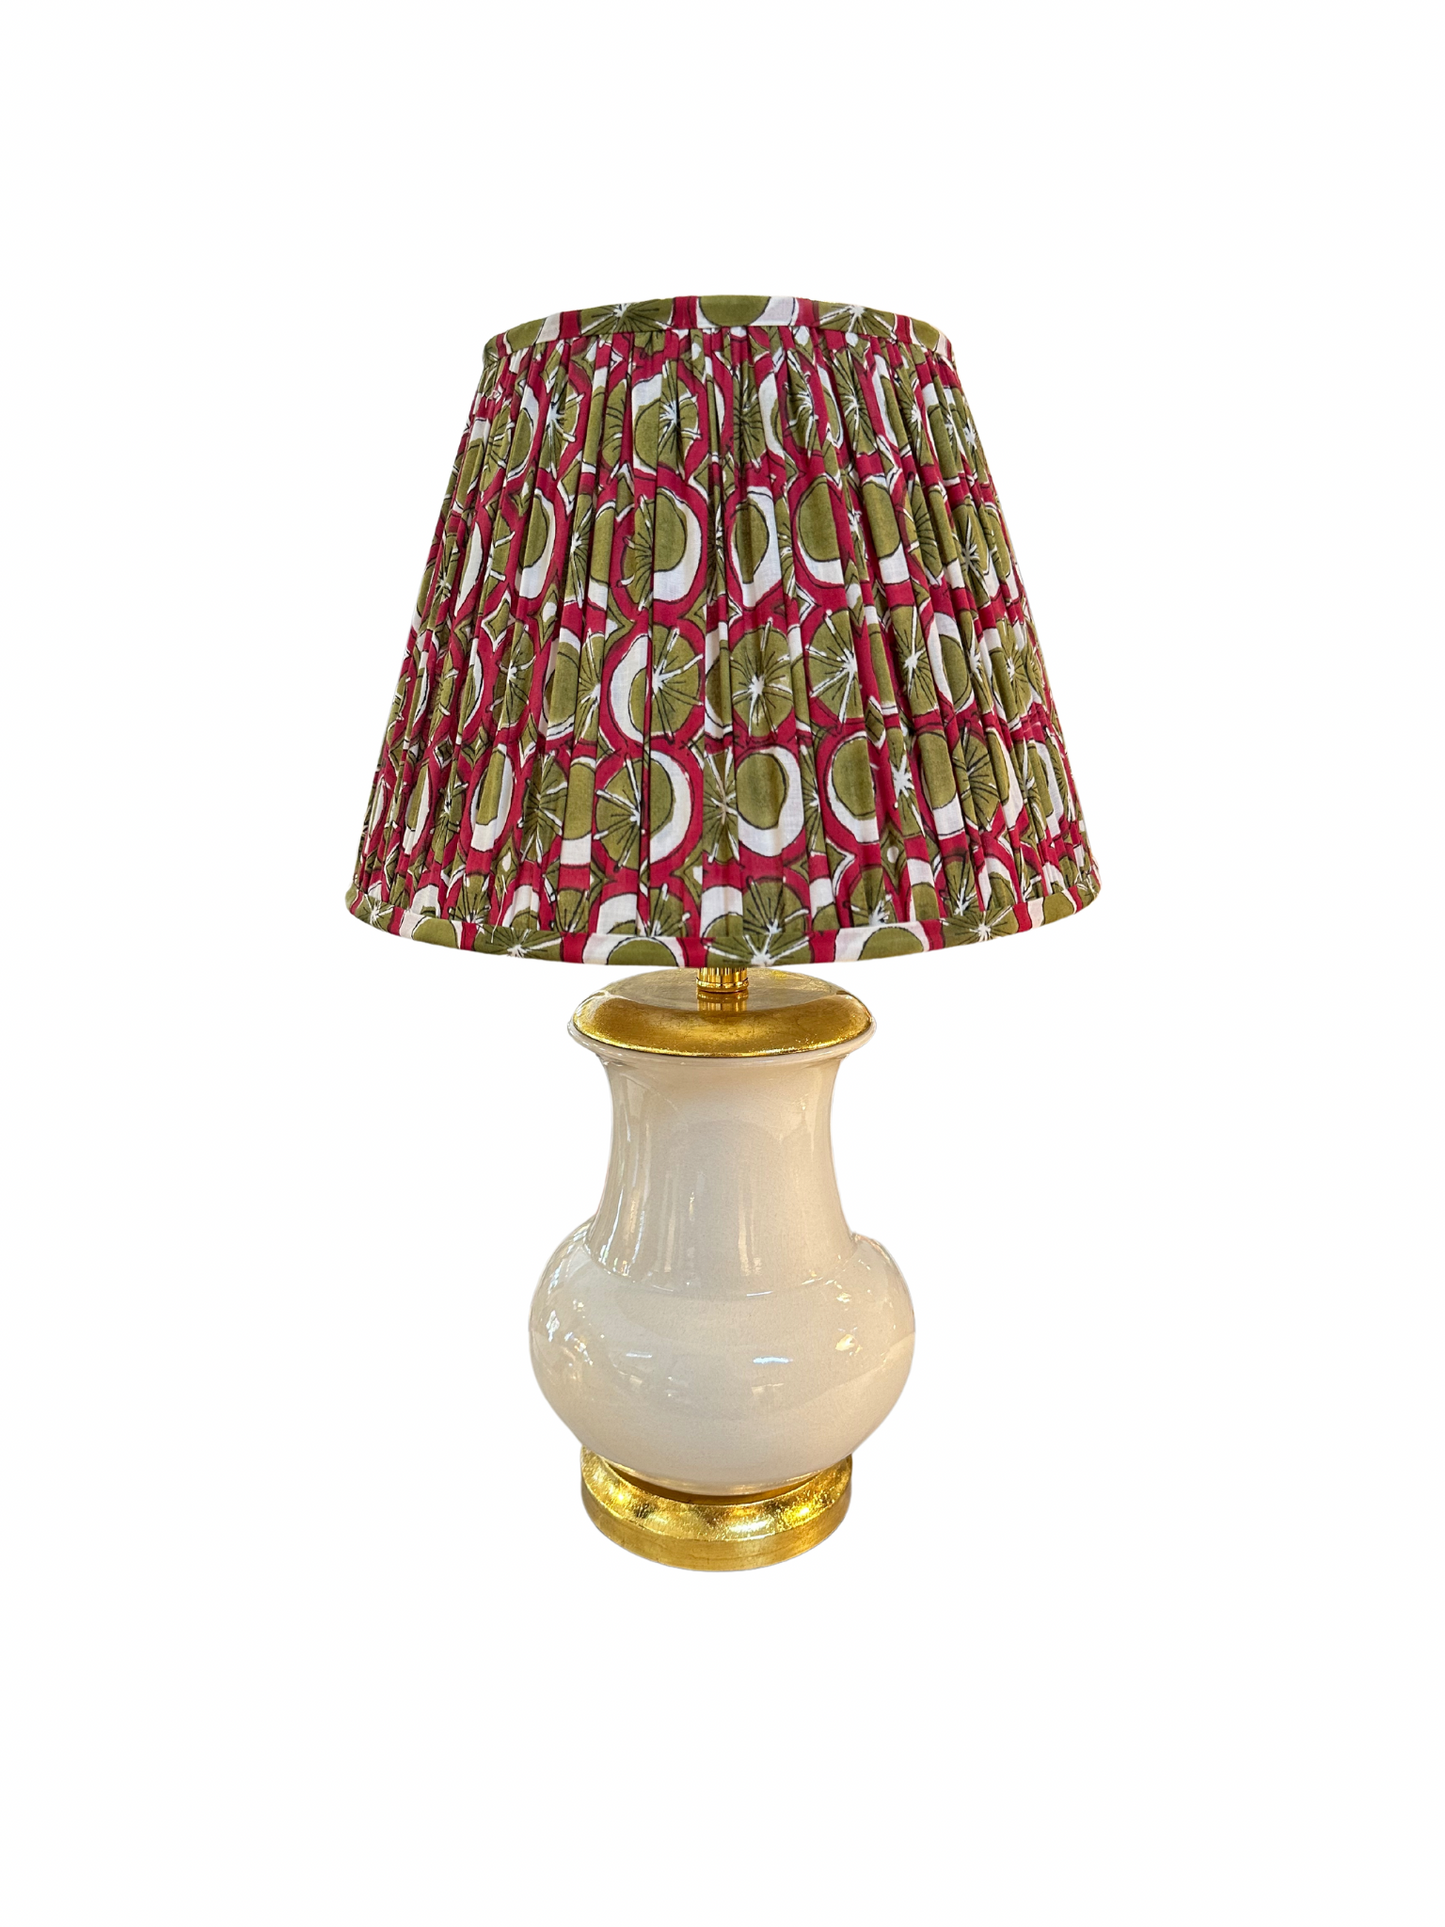 Lycee Table Lamp - Mushroom